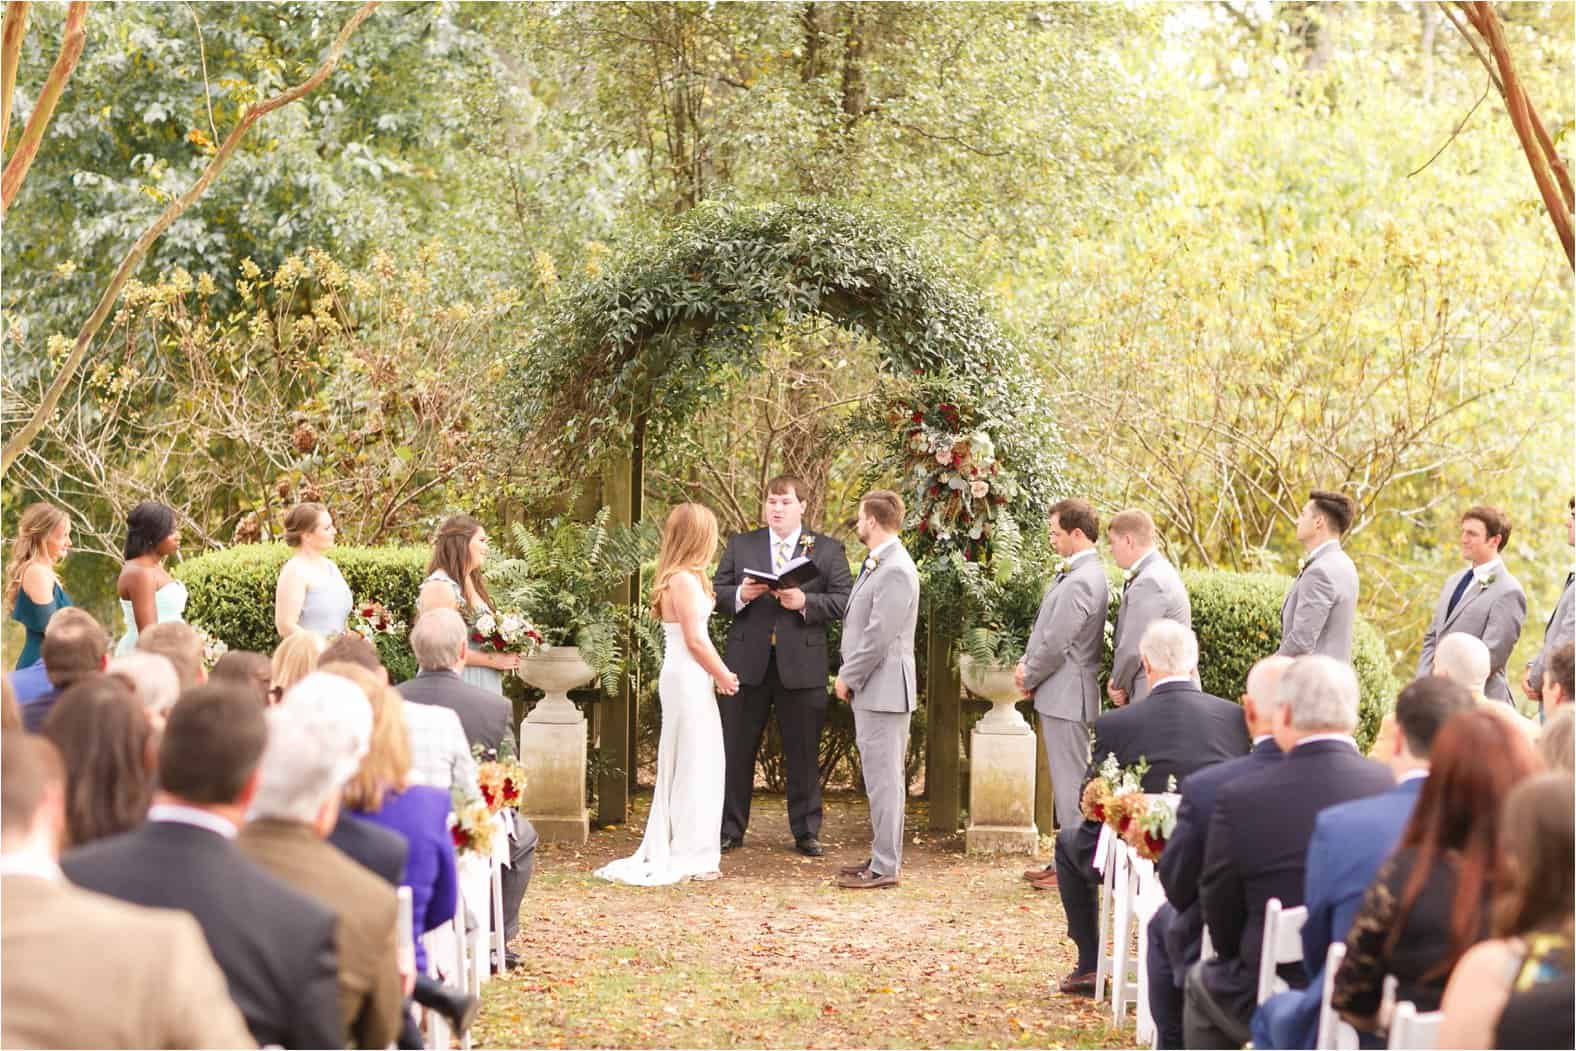 tuckahoe plantation wedding photos richmond virginia wedding photos